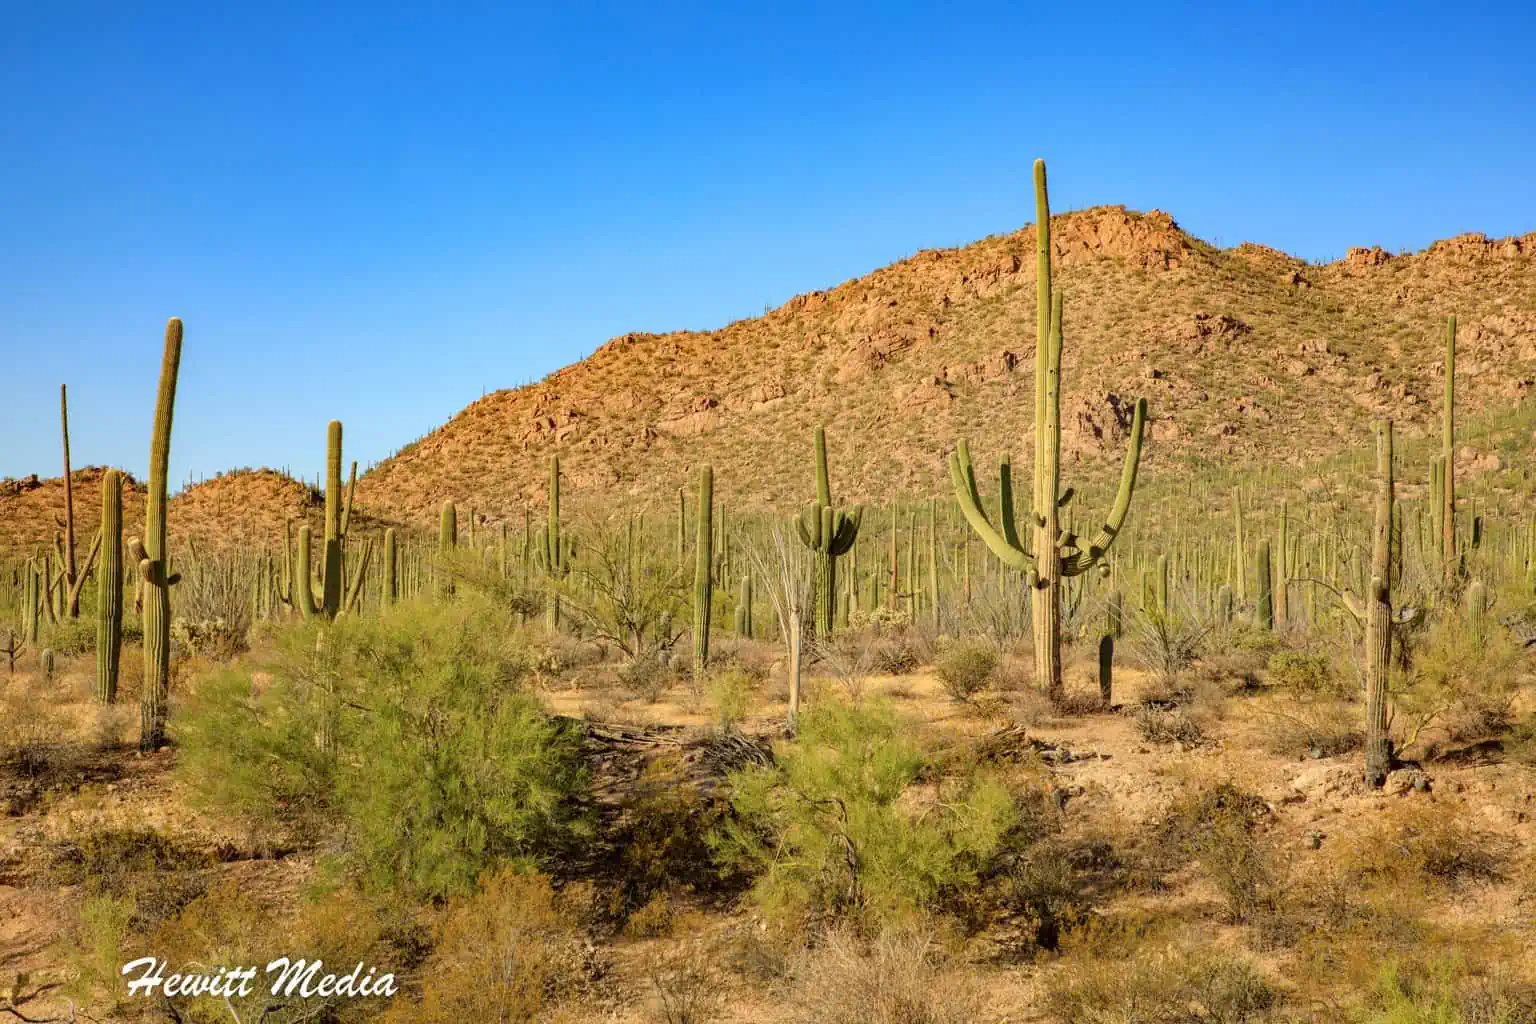 Desert Parks Road Trip - Saguaro